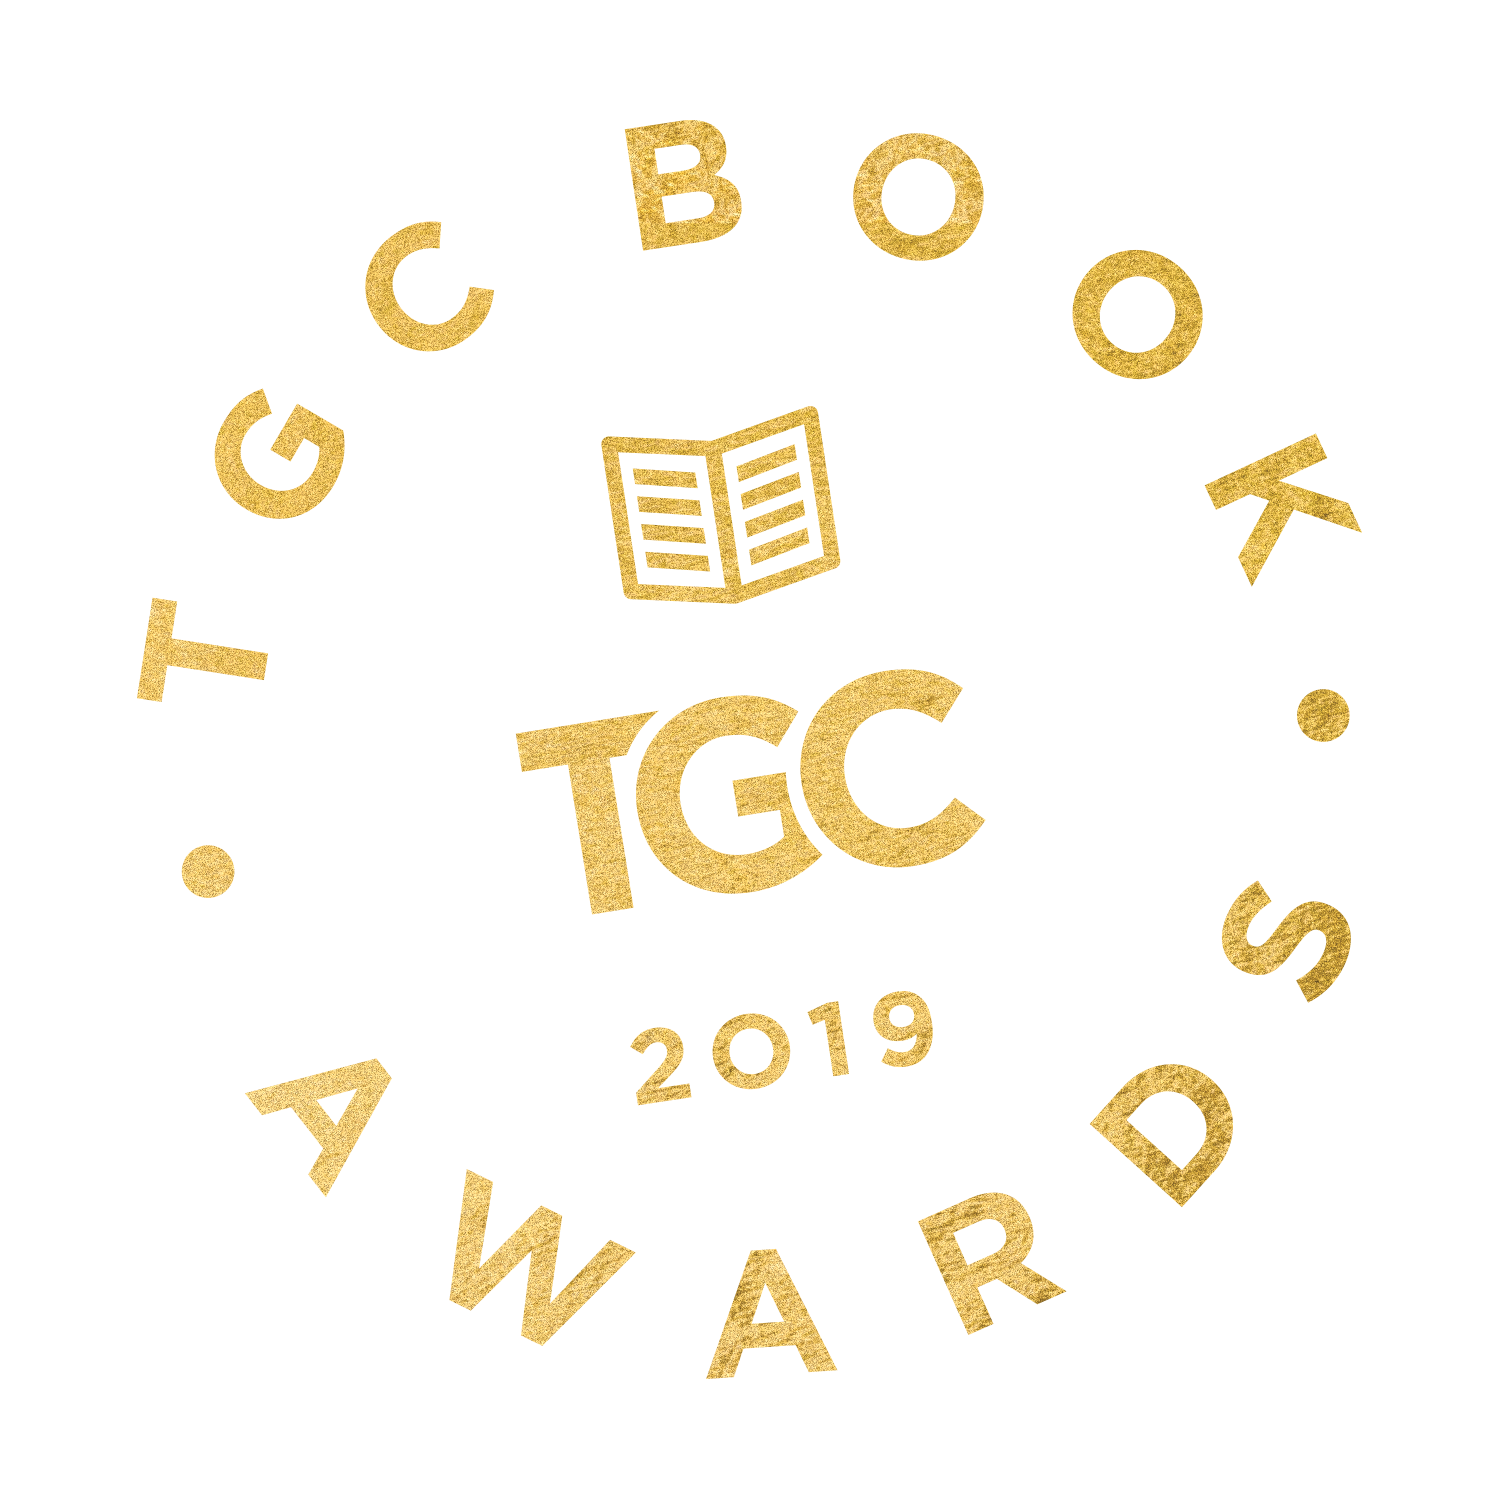 2019 TGC Book Award